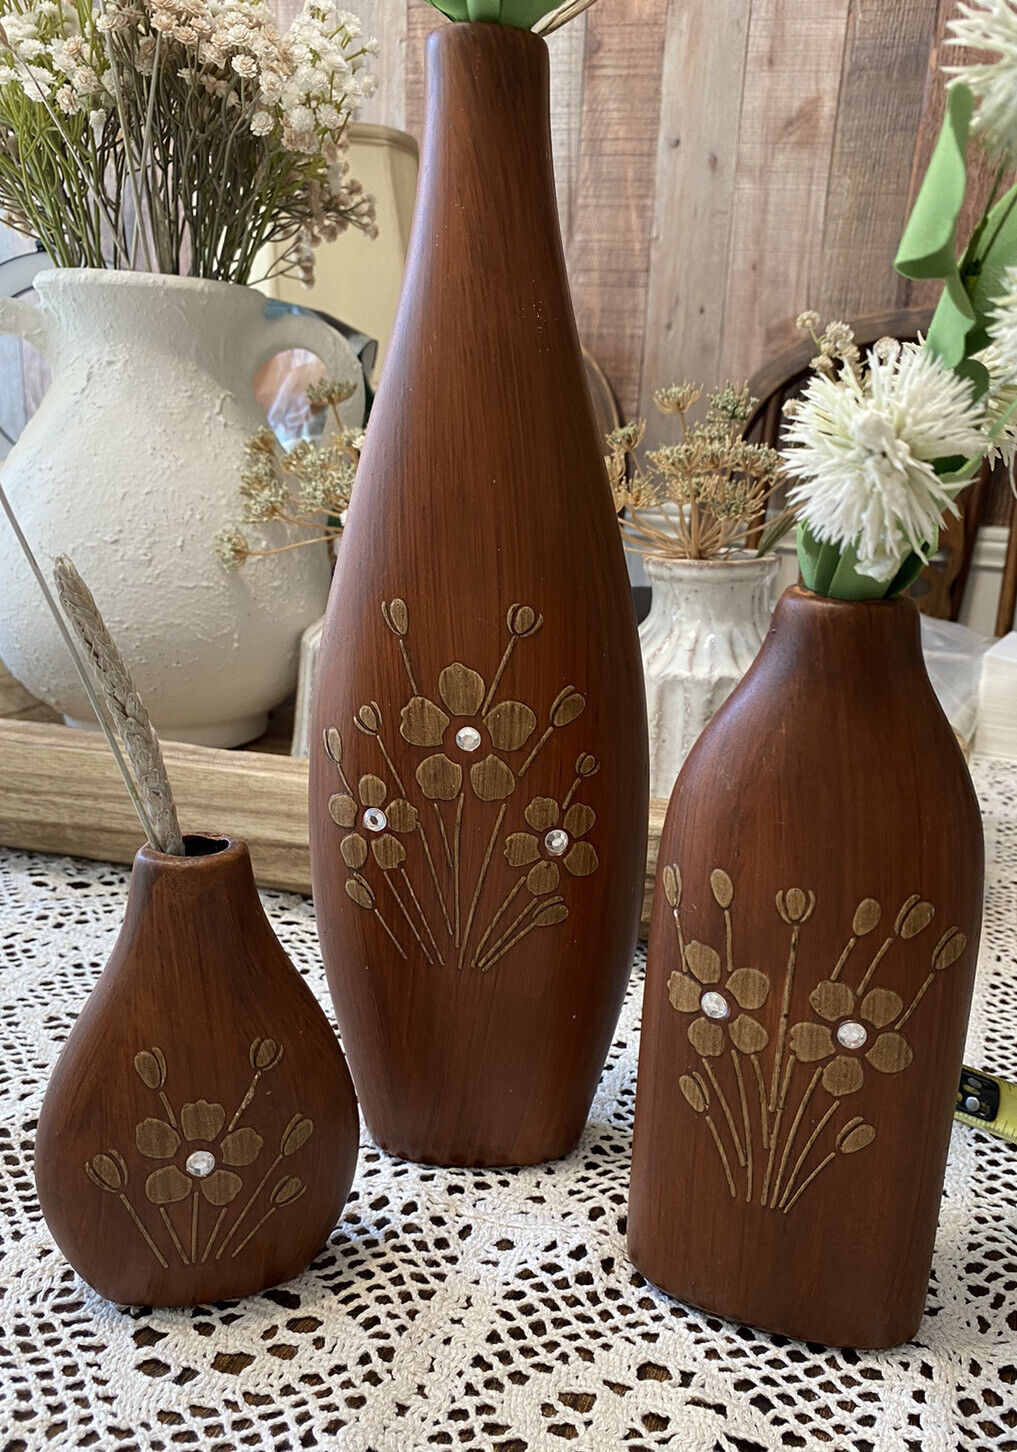 Vintage 1970s Vases Set Of 3, Wood Painted Vases Bohemian, Absolute Beauties